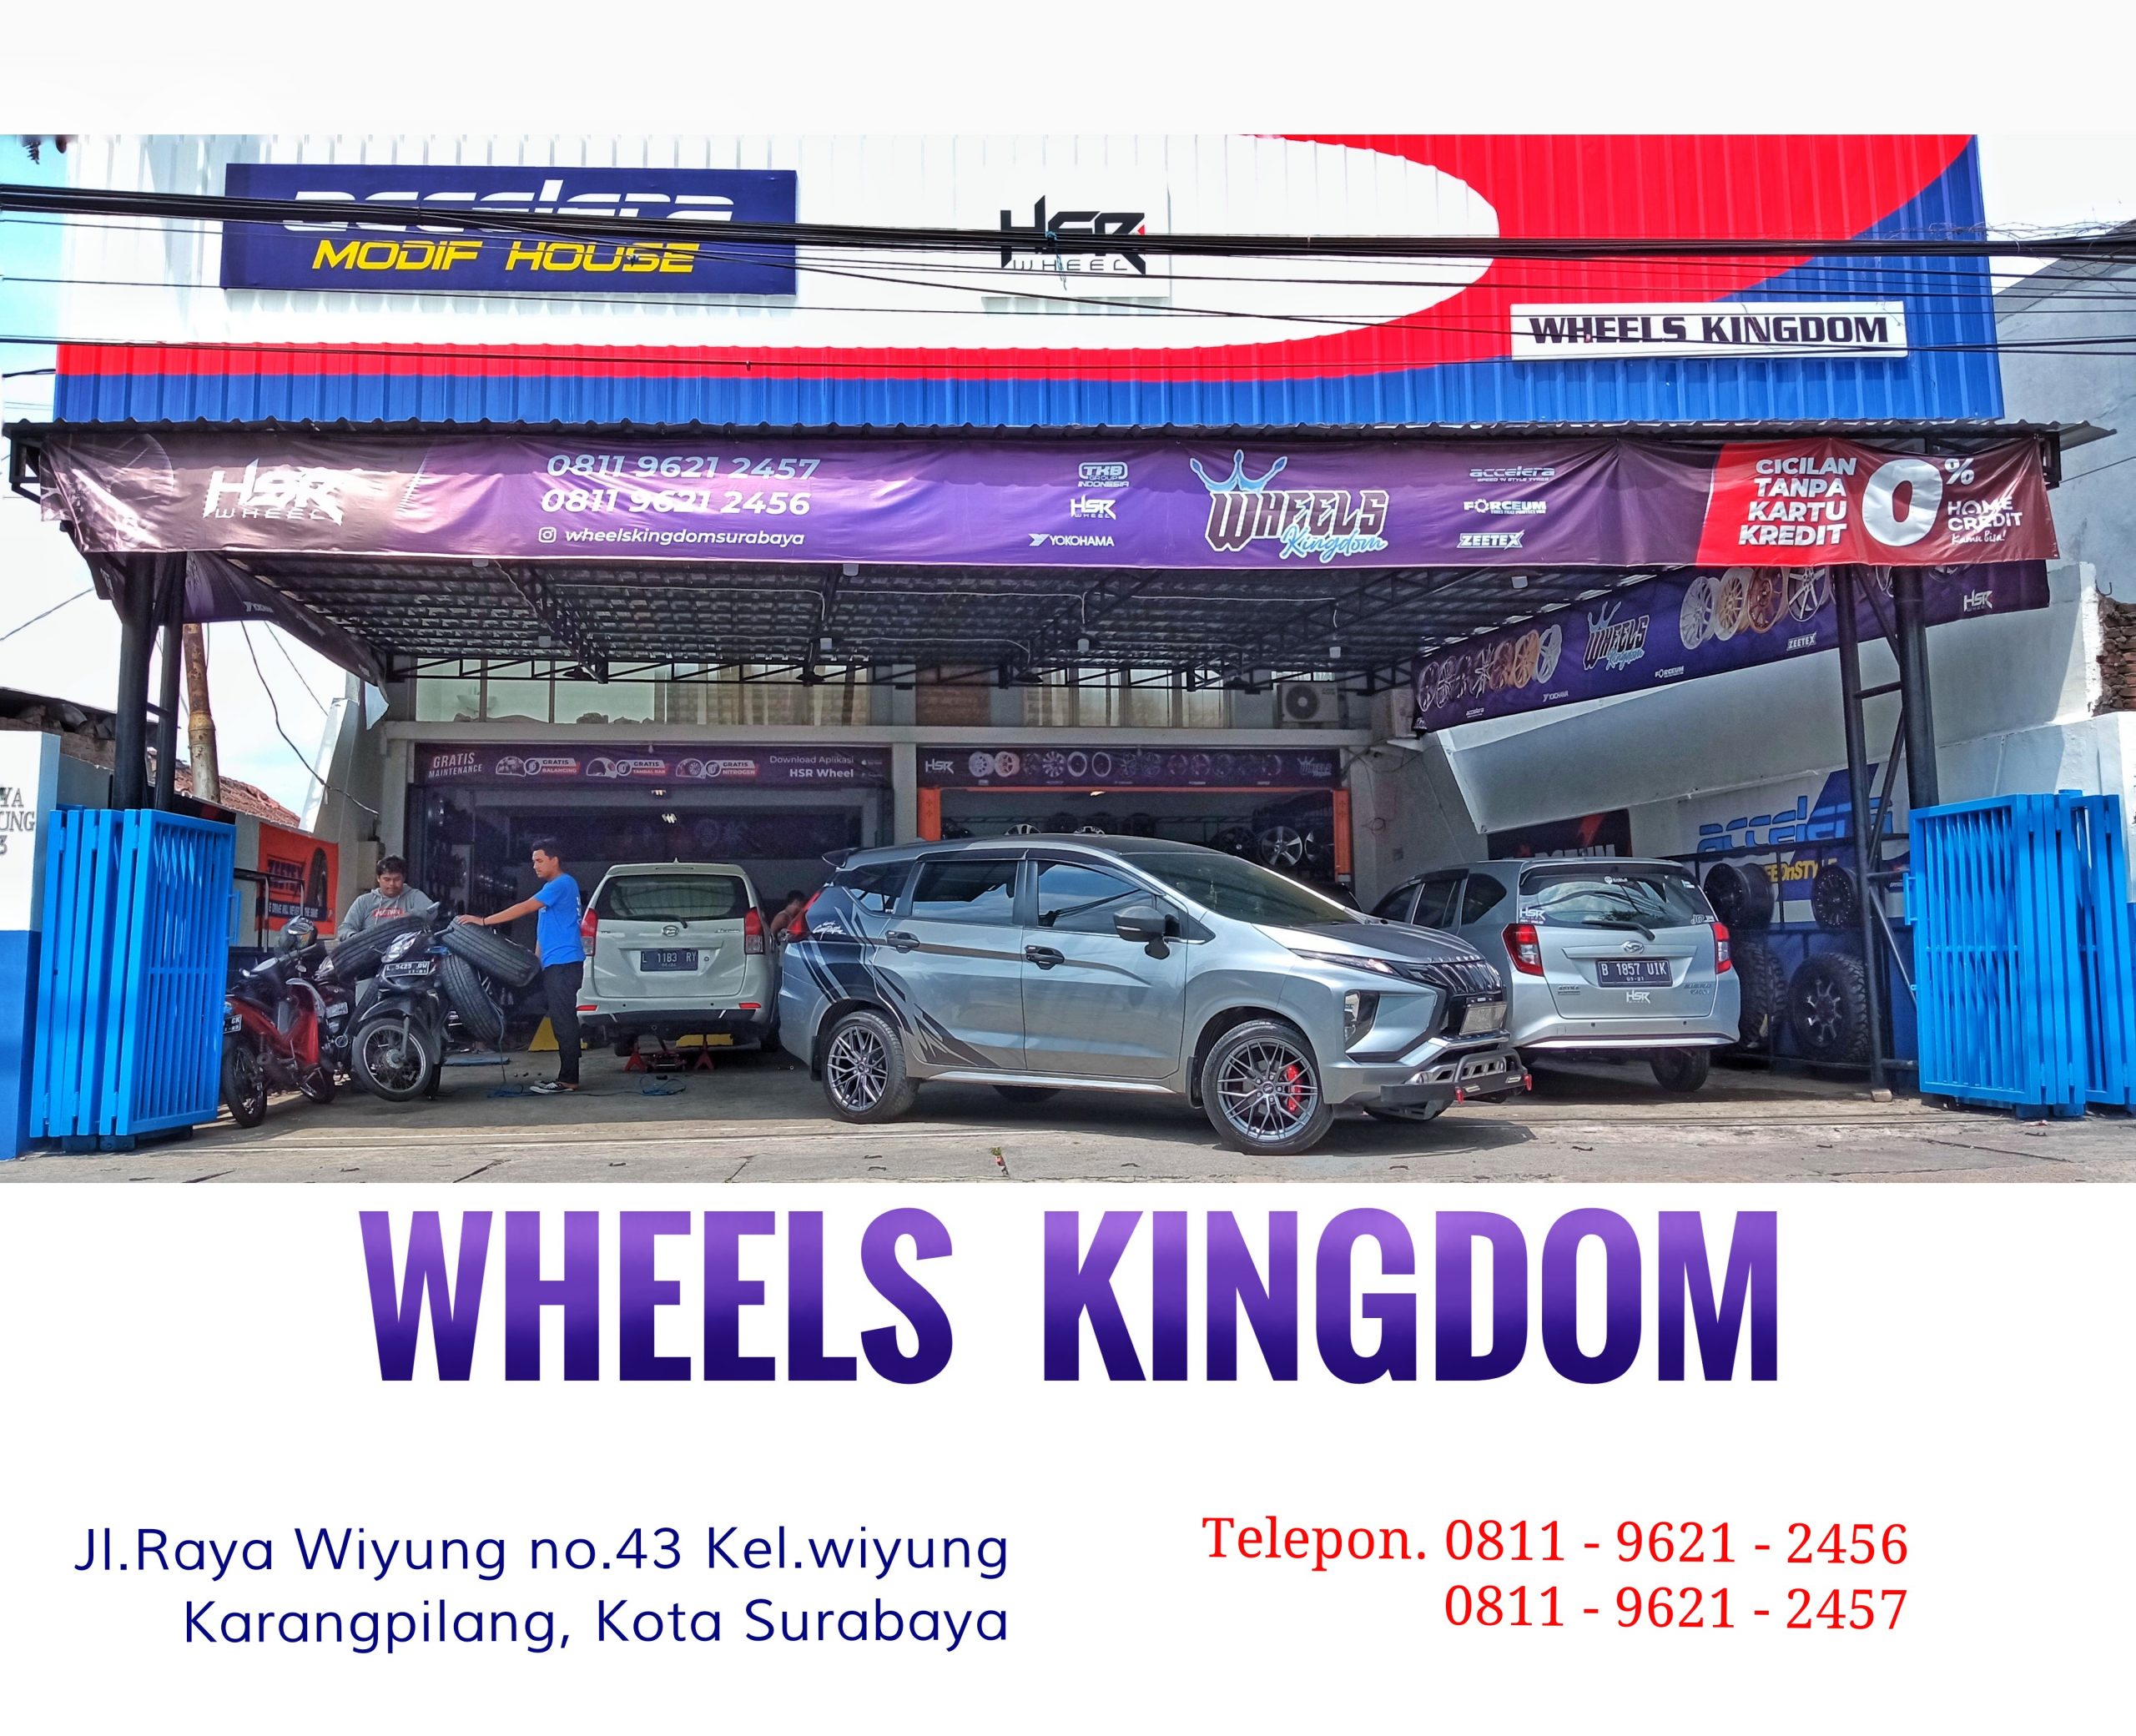 Pusat jual velg mobil racing berkualitas di magetan jawa timur | Wheels kingdom